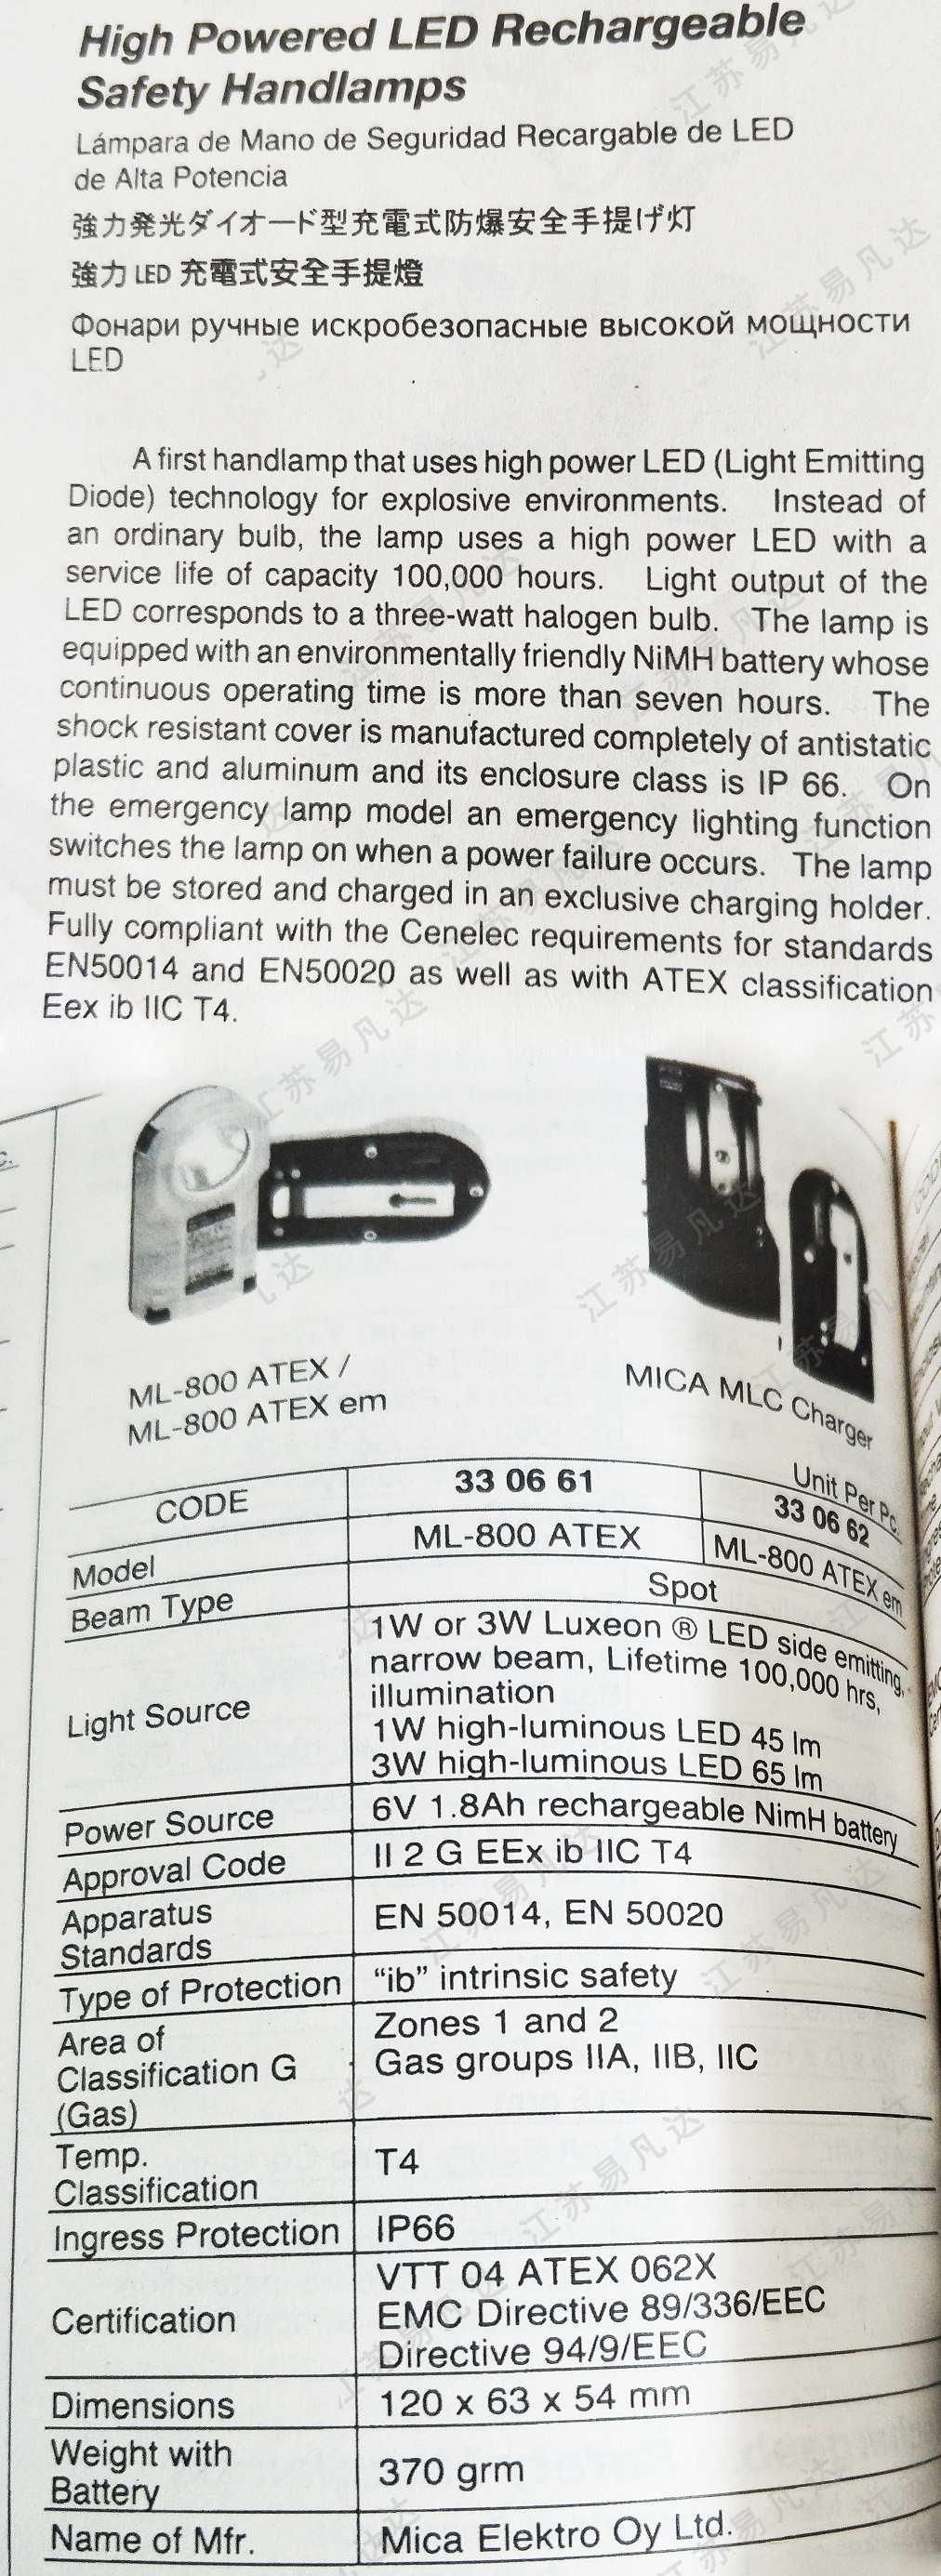 充电式防爆安全手提灯330661/330662强力LED充电式安全手提灯High powered LED rechargeable